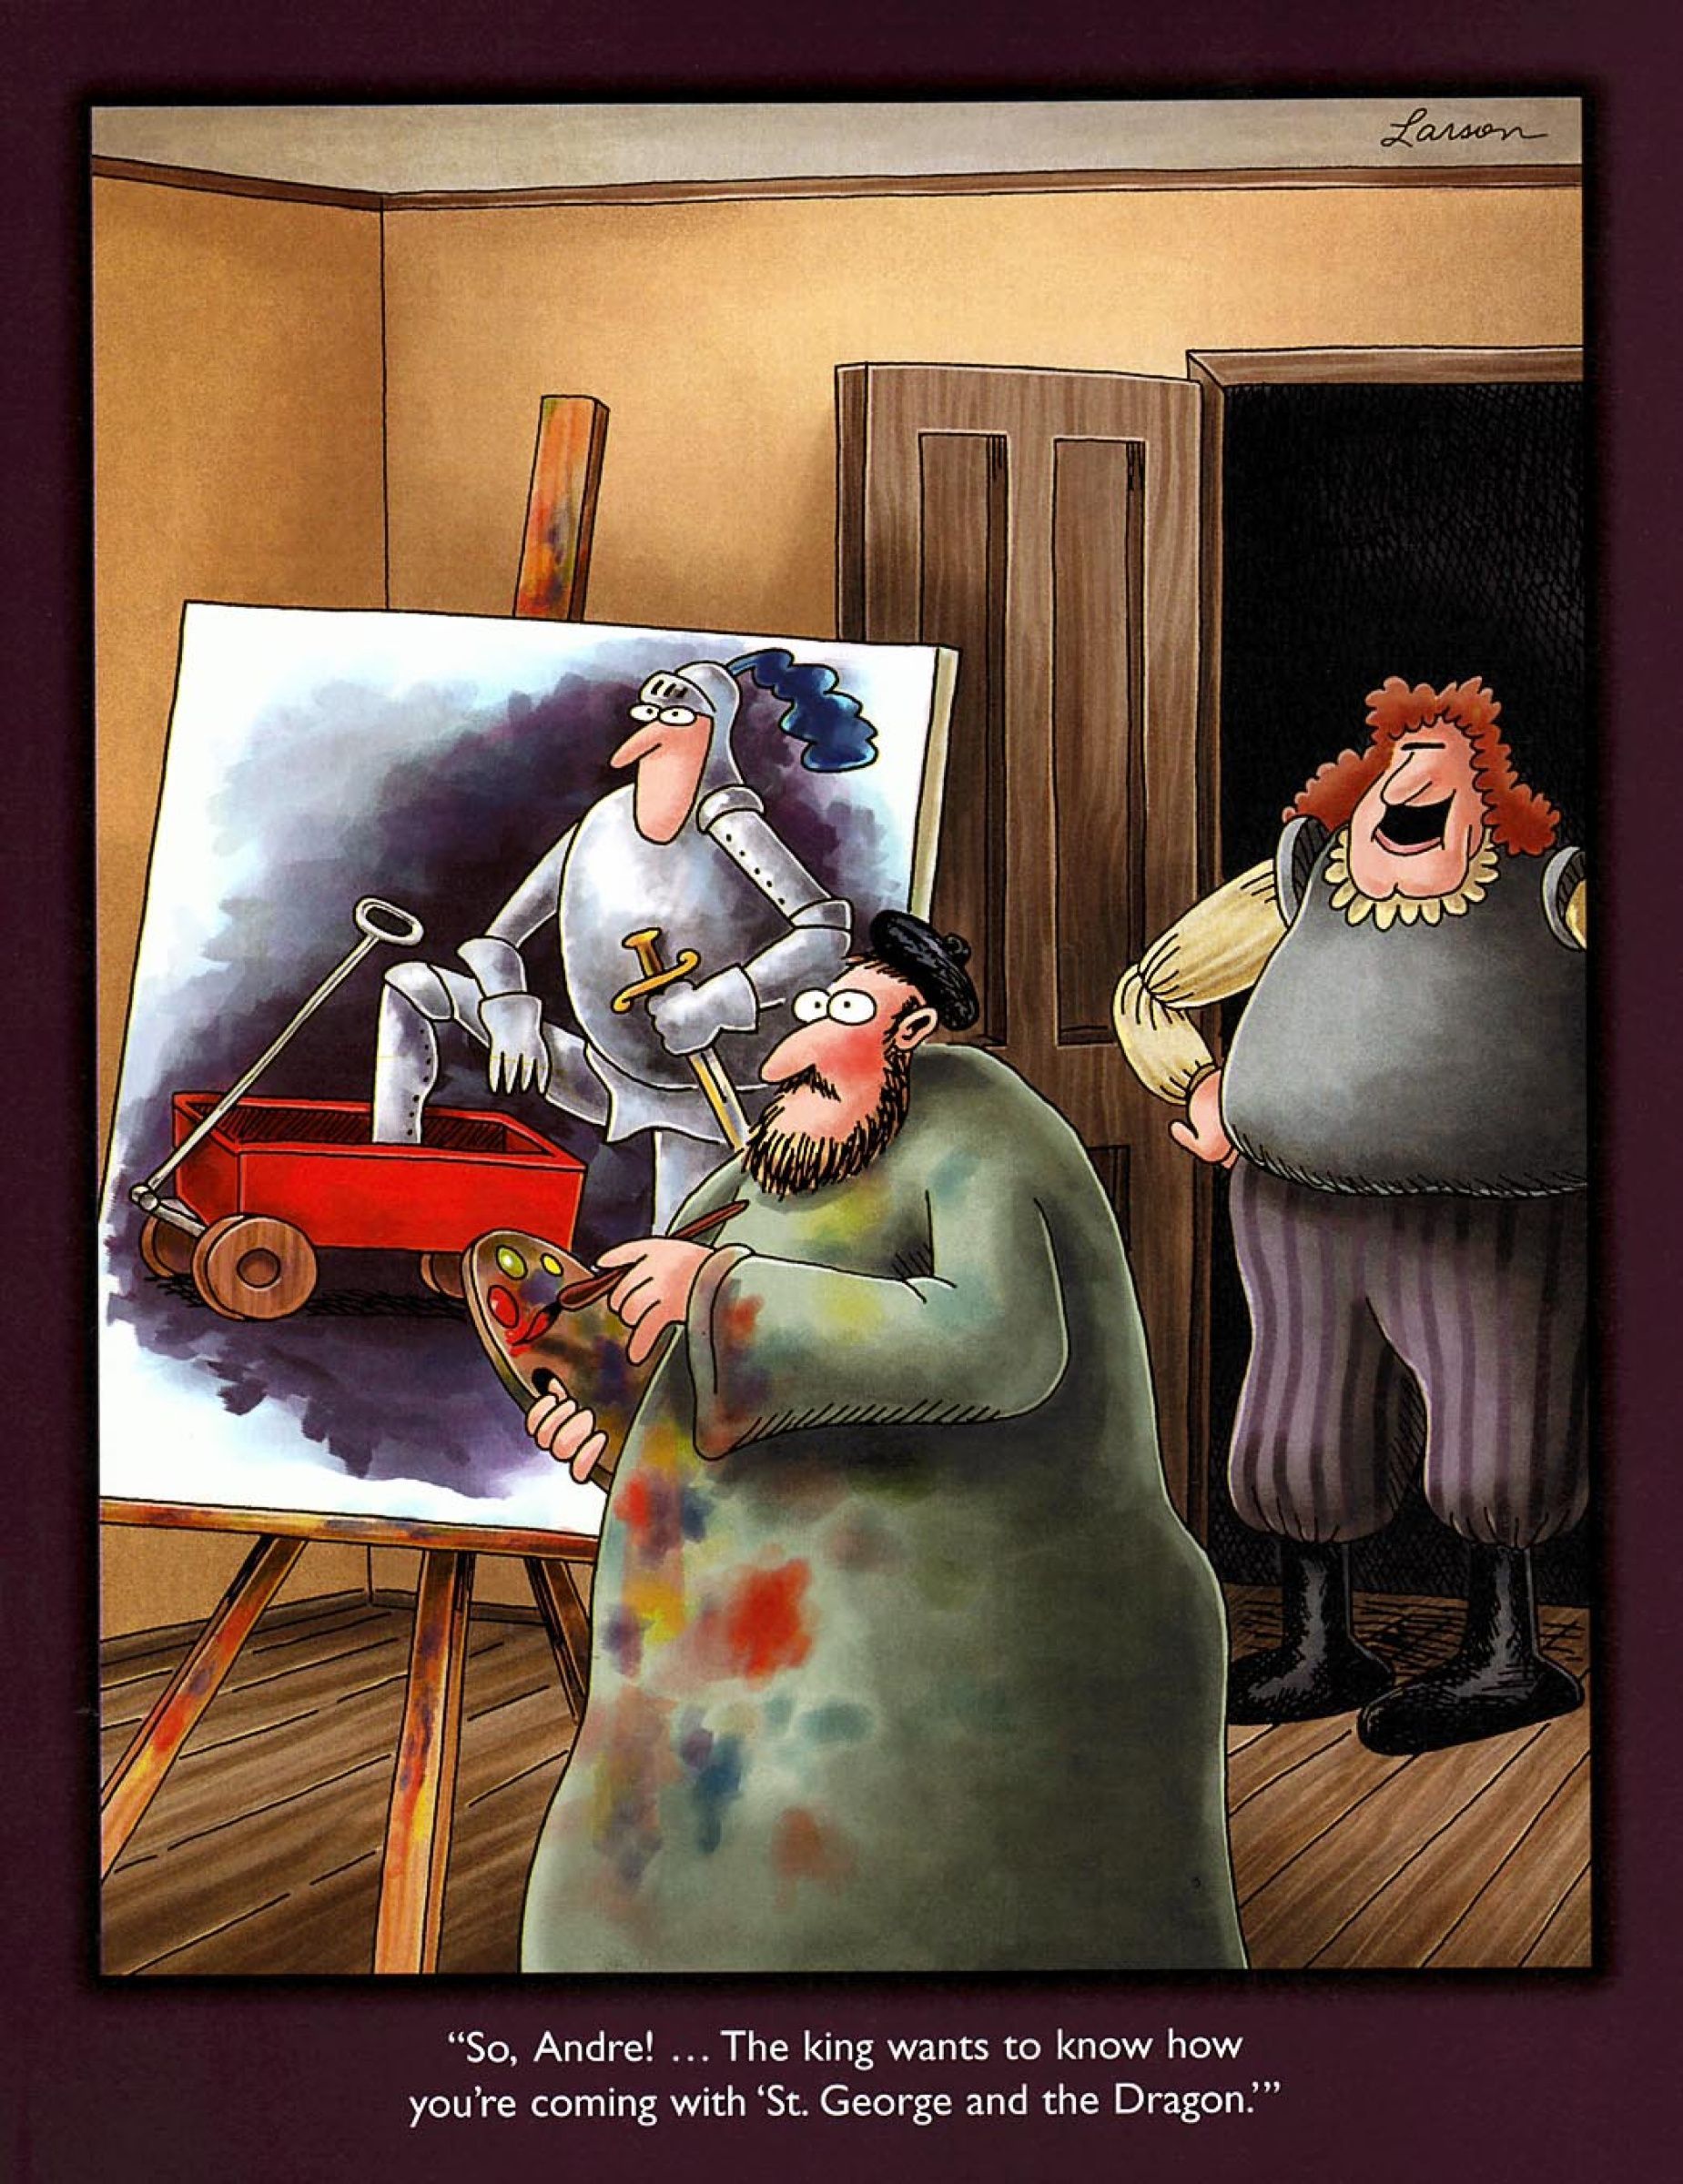 Uzak Taraf, sanatçı Andre yanlışlıkla Ejderha yerine Aziz George ve Vagon'u resmetmiştir